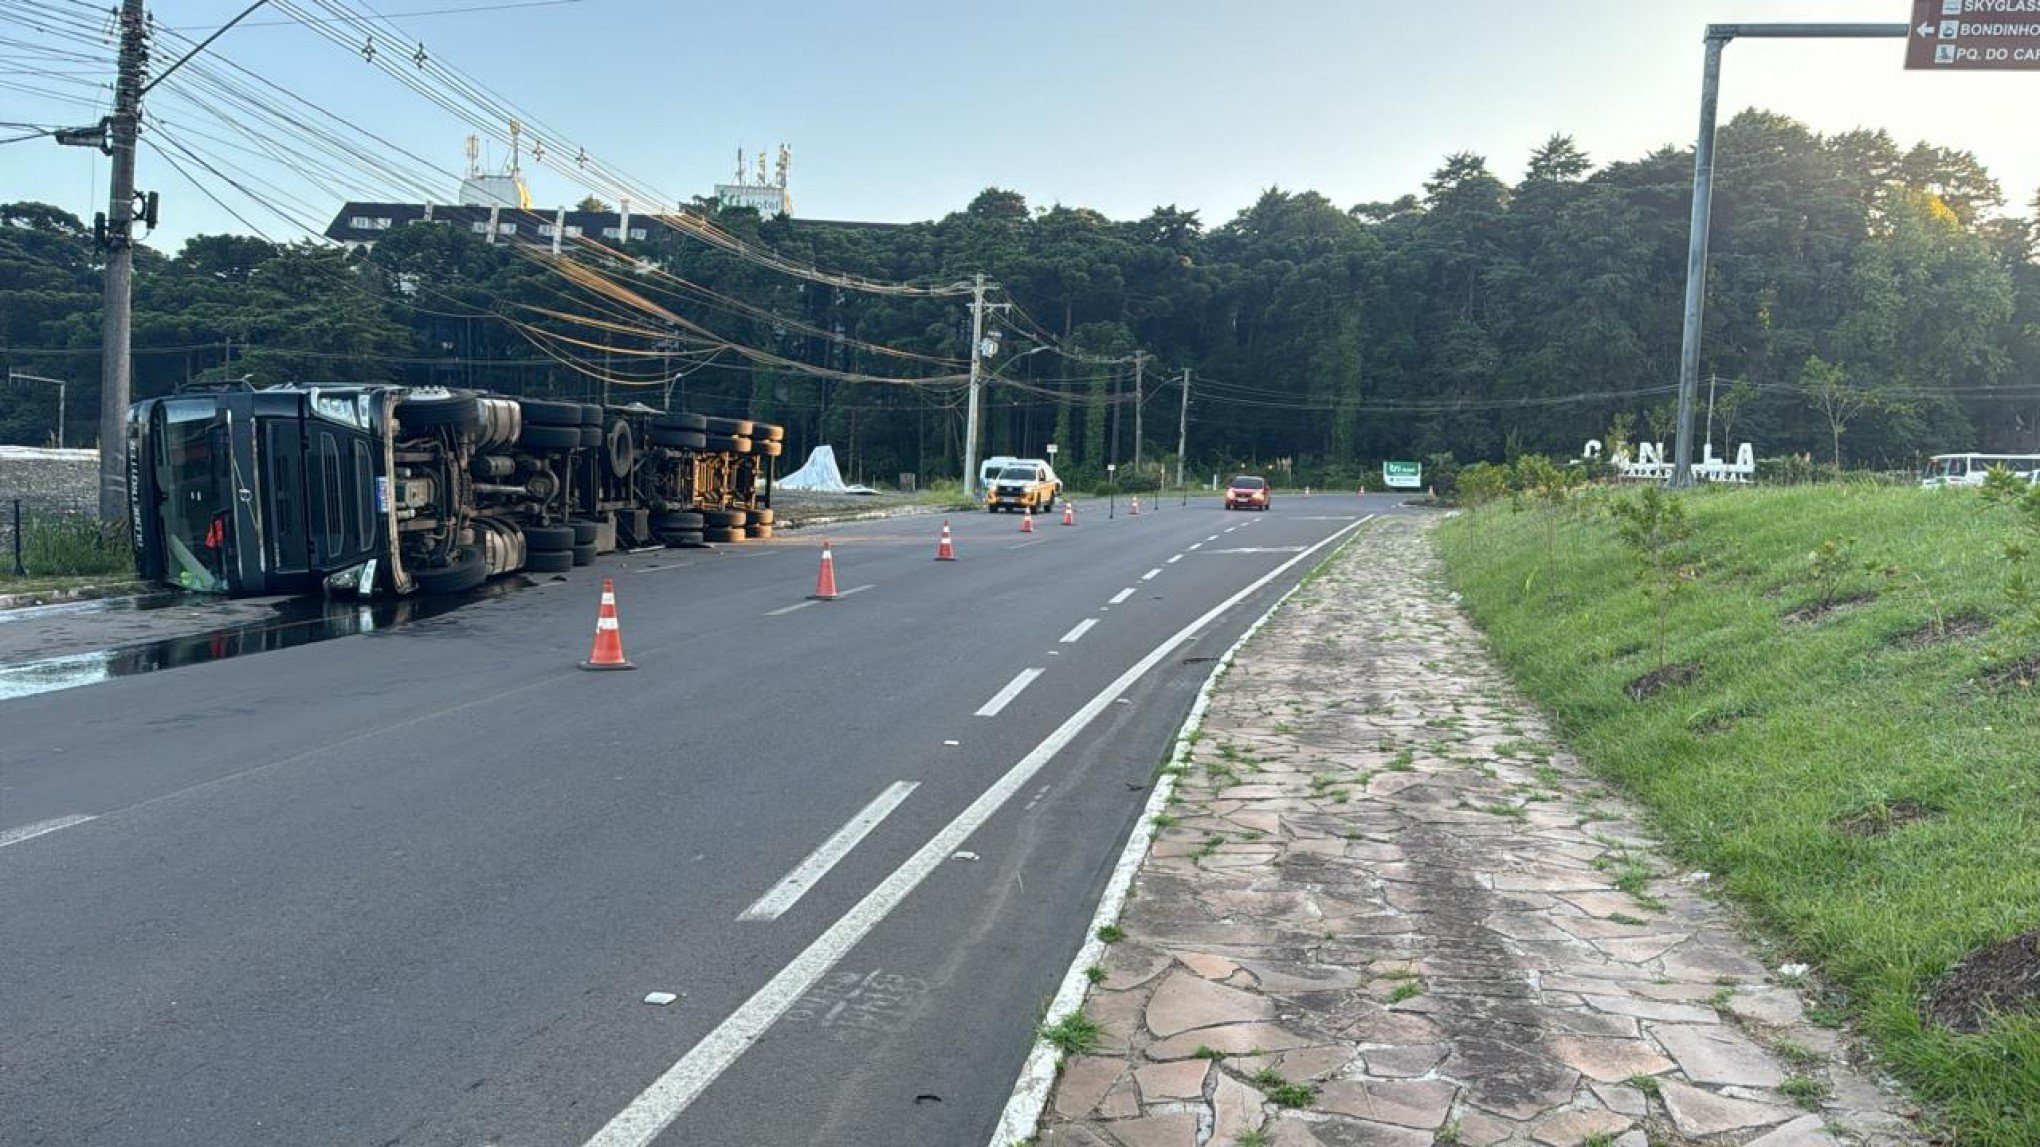 Caminhão tomba e derruba óleo sobre a pista em rodovia de Canela